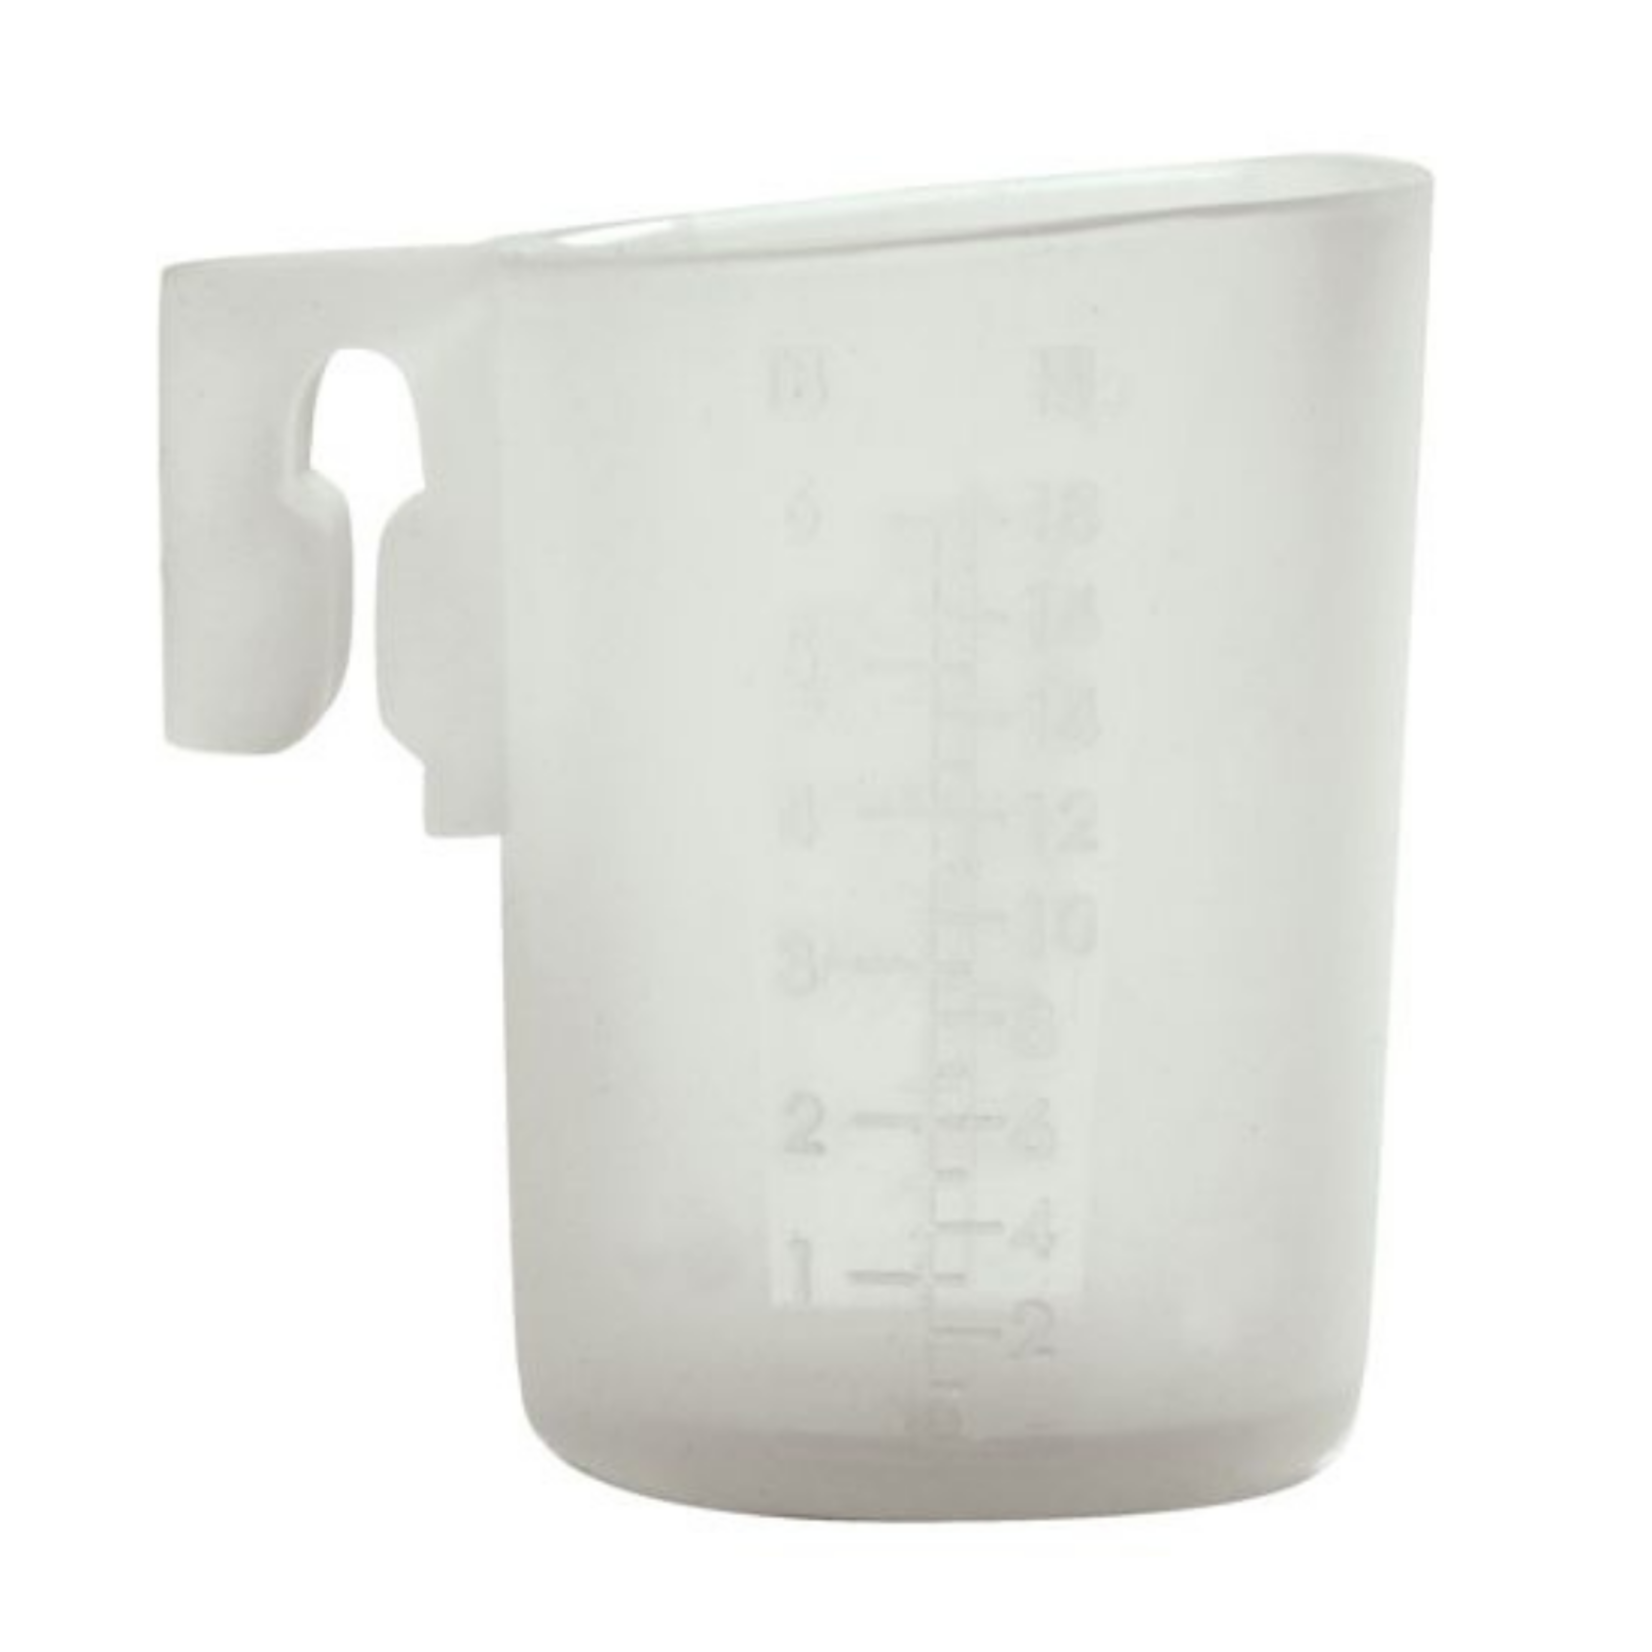 Norpro Silicone Mini Measuring Cup